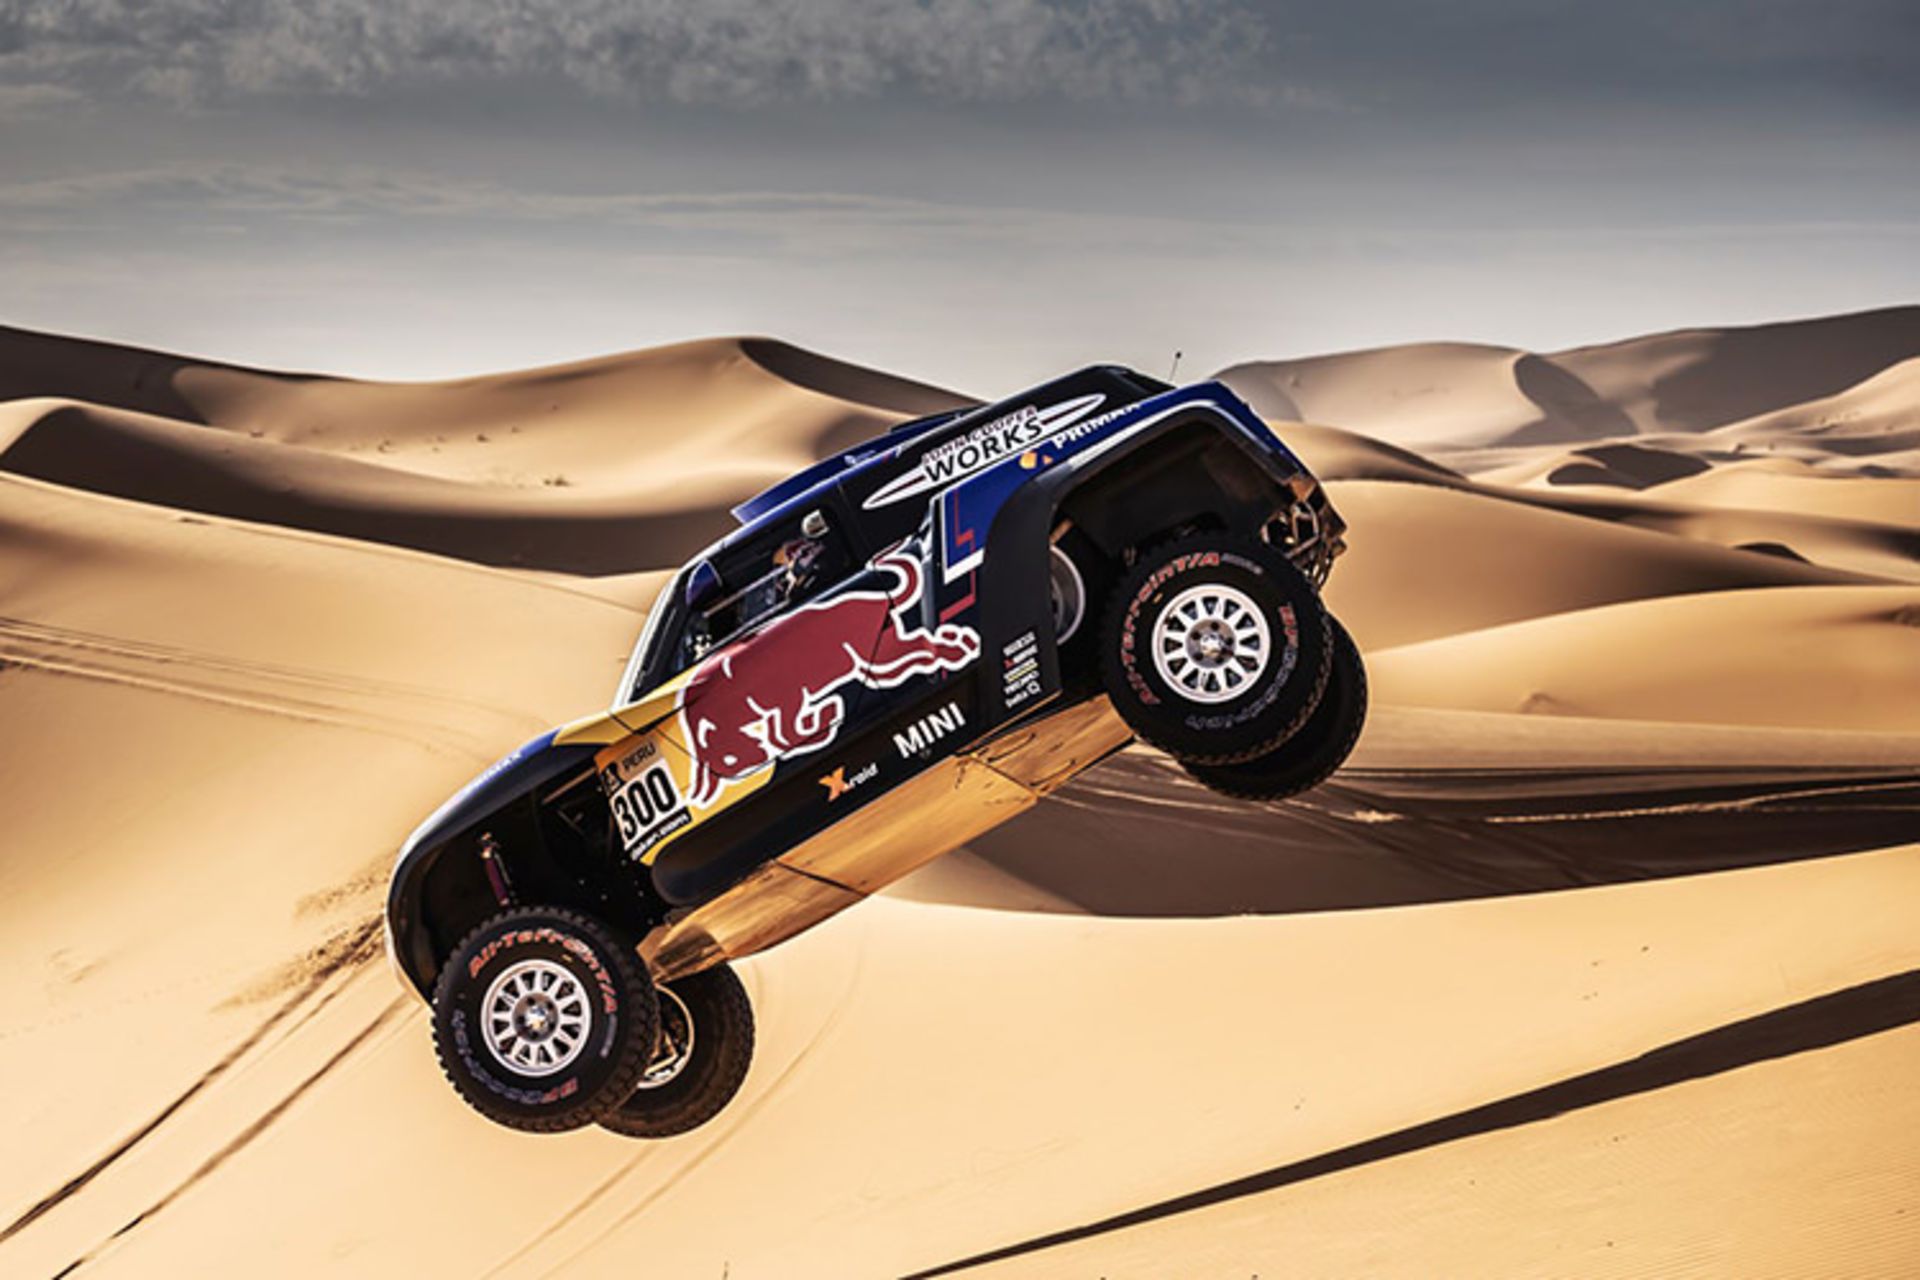 مرجع متخصصين ايران Carlos Sainz MINI Rally Dakar 2019 / كارلوس ساينز ميني رالي داكار